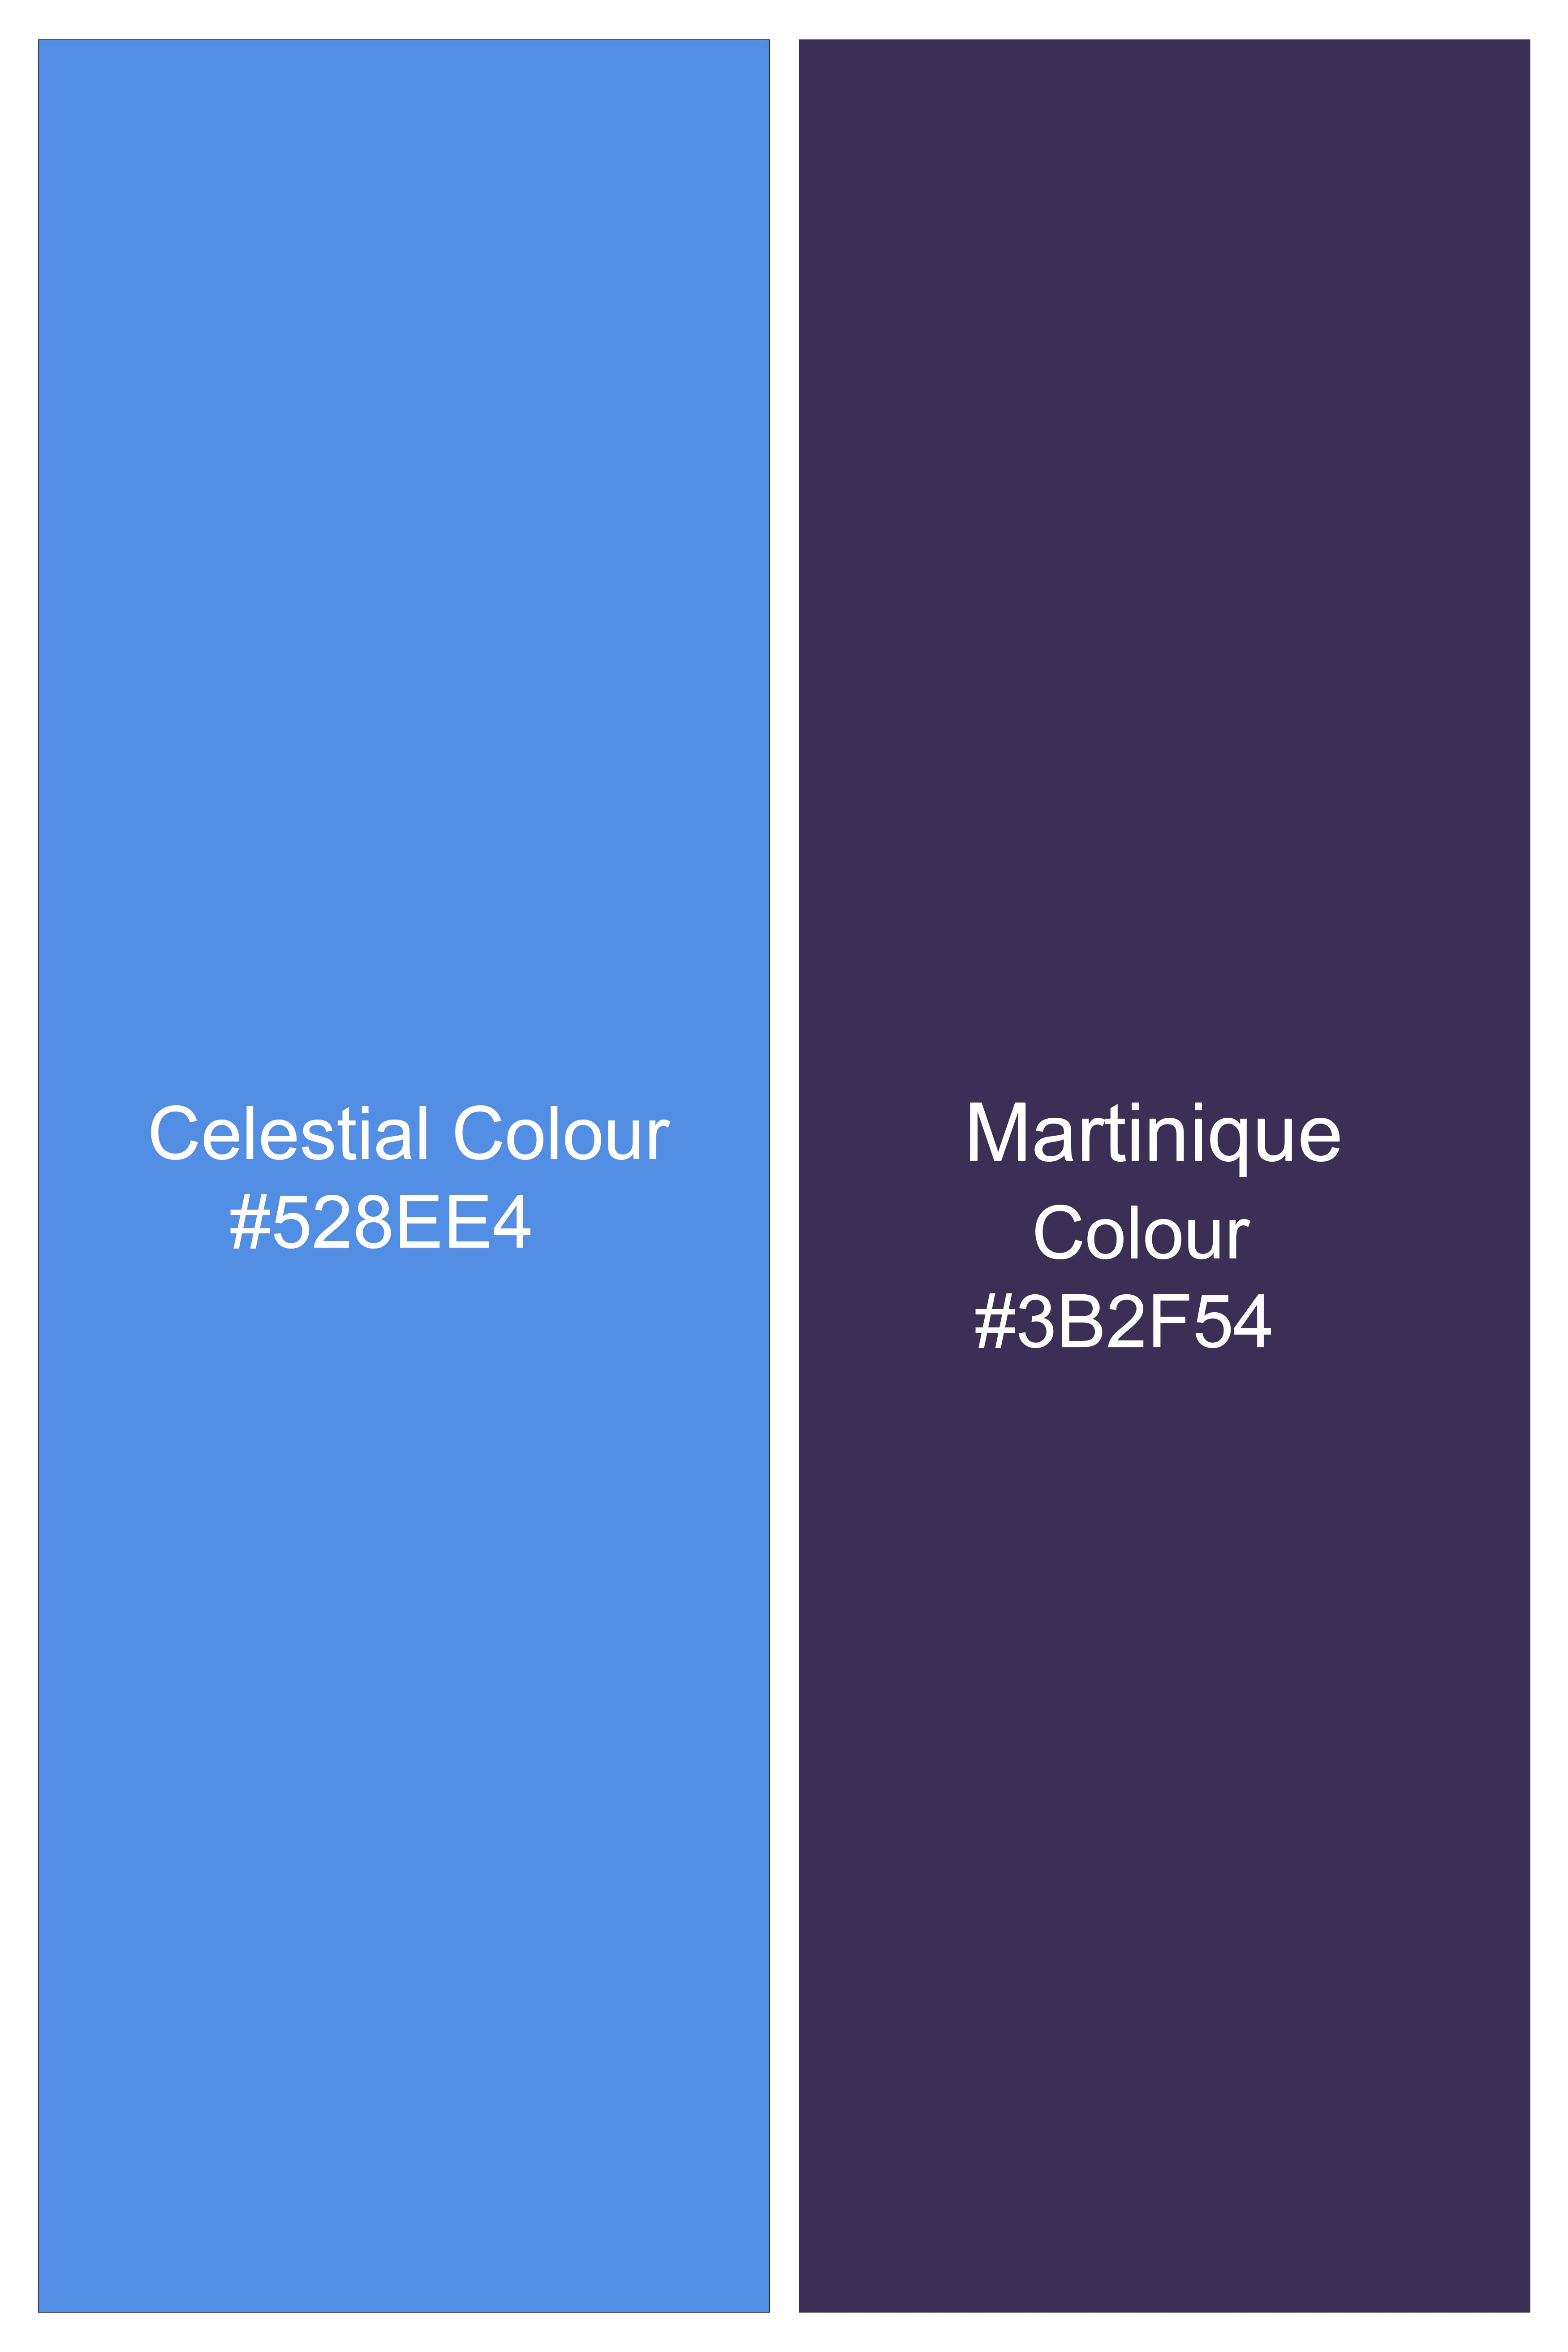 Celestial Blue and Martinique Purple Plaid Wool Rich Designer Blazer BL2856-SB-D395-36, BL2856-SB-D395-38, BL2856-SB-D395-40, BL2856-SB-D395-42, BL2856-SB-D395-44, BL2856-SB-D395-46, BL2856-SB-D395-48, BL2856-SB-D395-50, BL2856-SB-D395-52, BL2856-SB-D395-54, BL2856-SB-D395-56, BL2856-SB-D395-58, BL2856-SB-D395-60